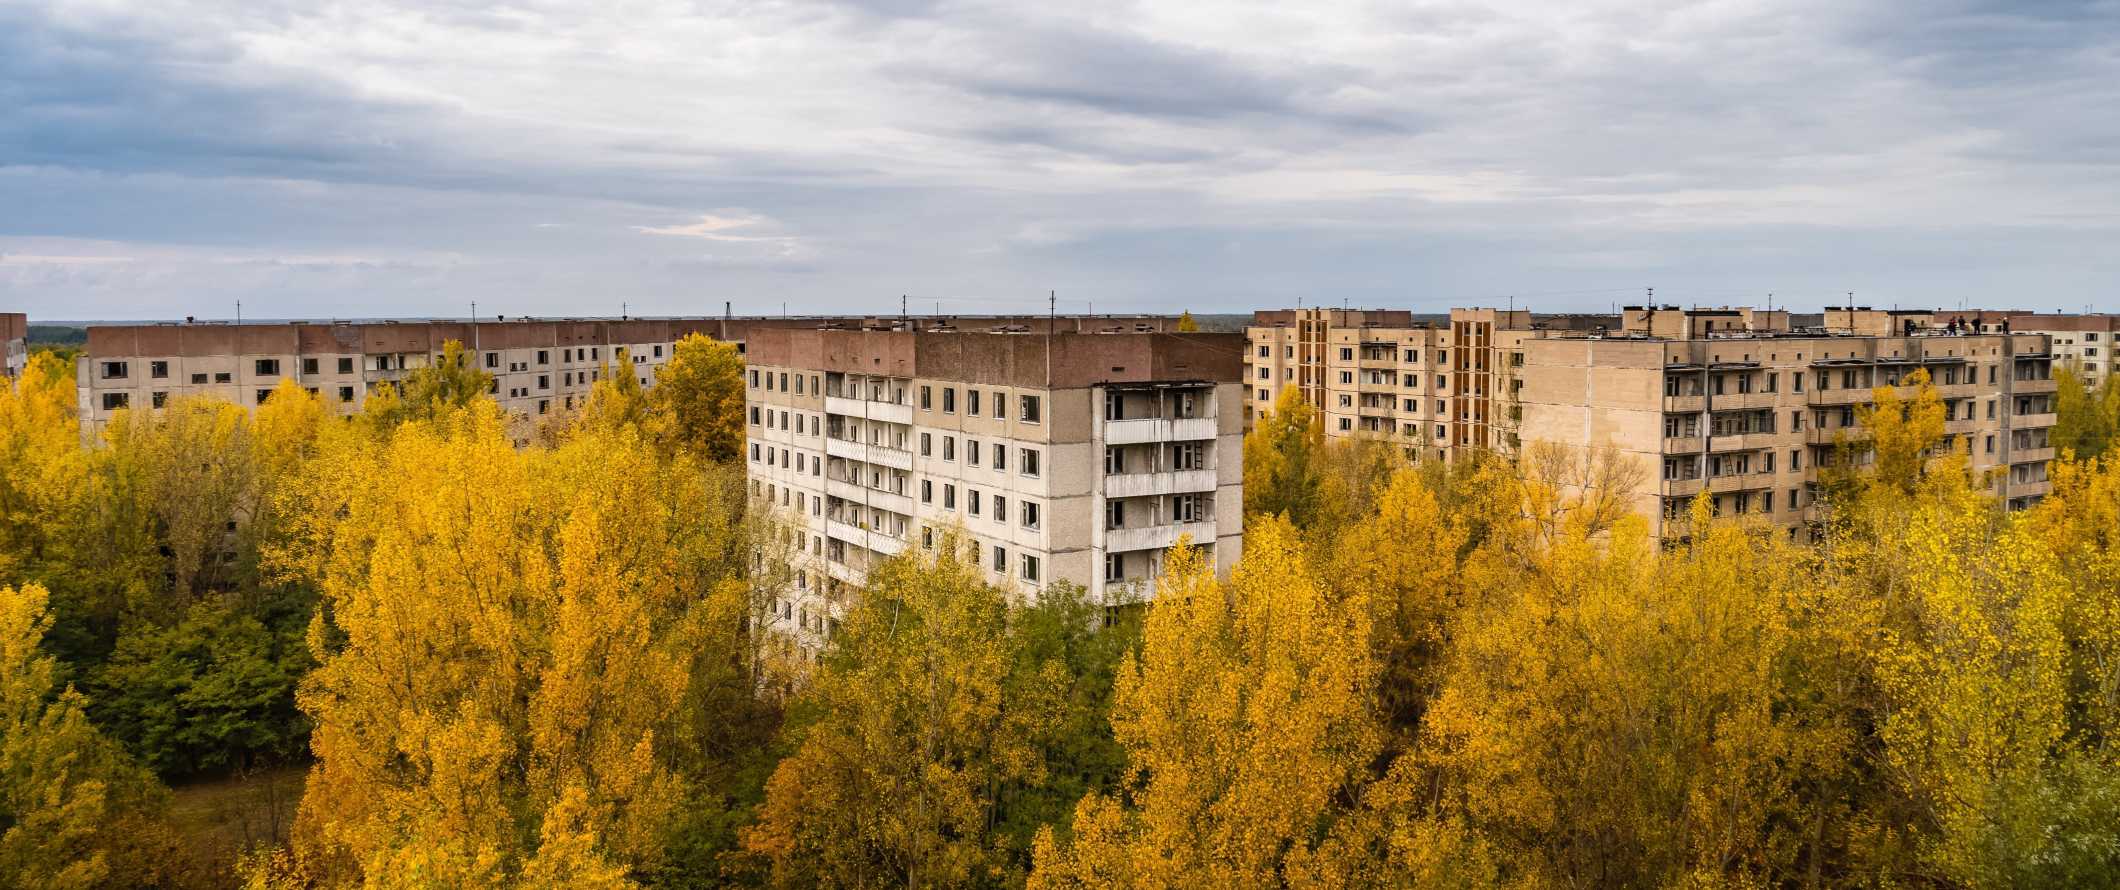 Vista de edifícios residenciais abandonados com árvores crescendo ao seu redor em Chernobyl, Ucrânia